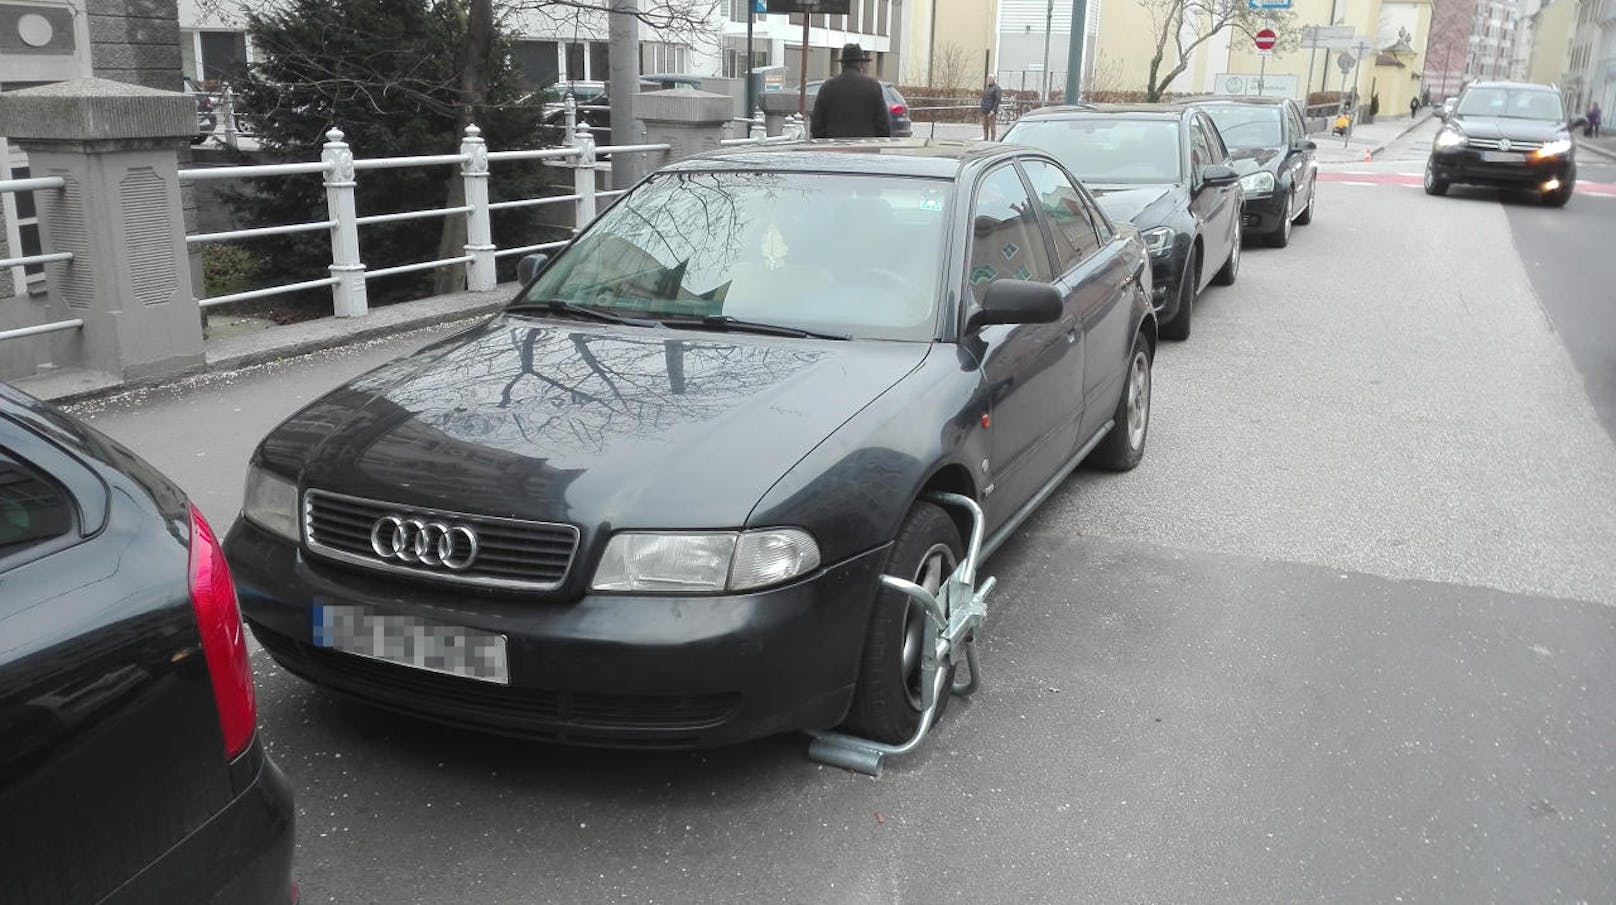 Dieser rumänische Audi steht seit Wochen in einer Kurzparkzone: Ein Magistrats-Mitarbeiter hat bereits ein Warn-Pickerl an der Heckscheibe aufgeklebt.